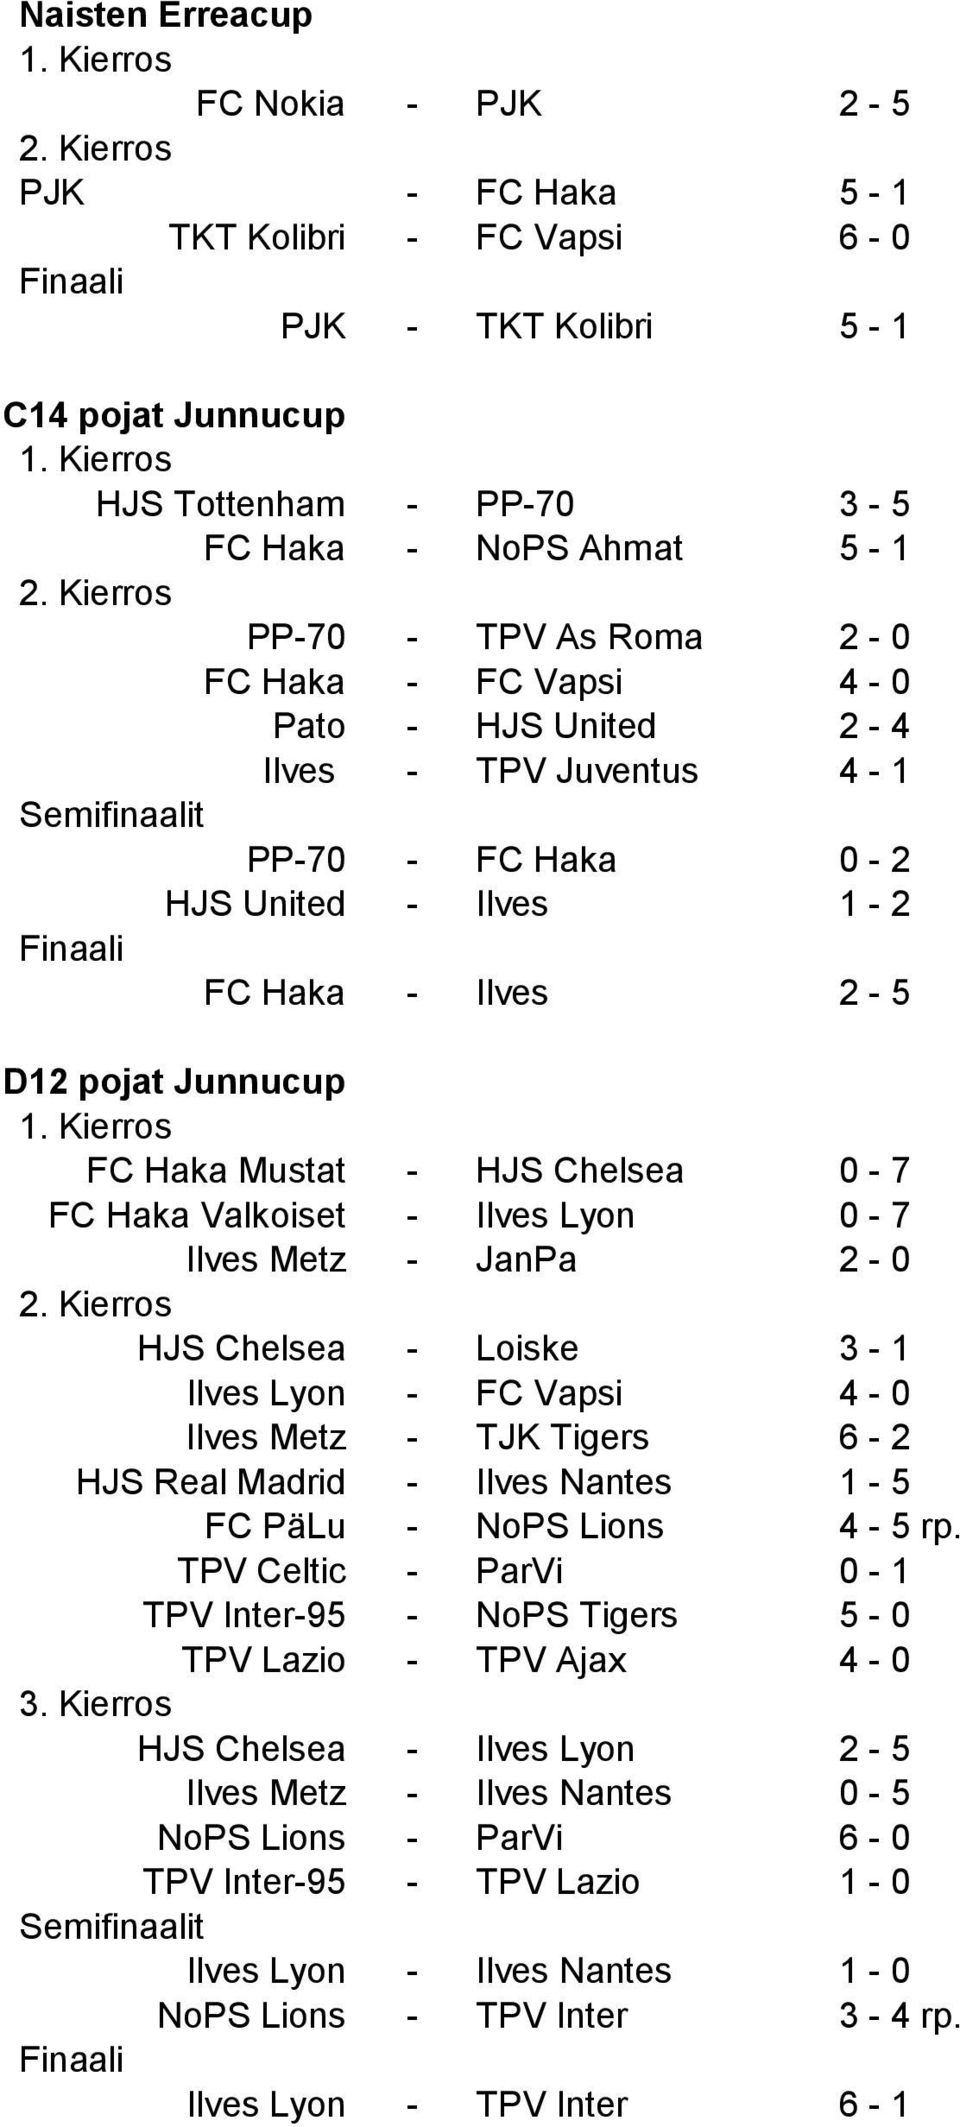 Kierros PP-70 - TPV As Roma 2-0 FC Haka - FC Vapsi 4-0 Pato - HJS United 2-4 Ilves - TPV Juventus 4-1 Semifinaalit PP-70 - FC Haka 0-2 HJS United - Ilves 1-2 Finaali FC Haka - Ilves 2-5 D12 pojat